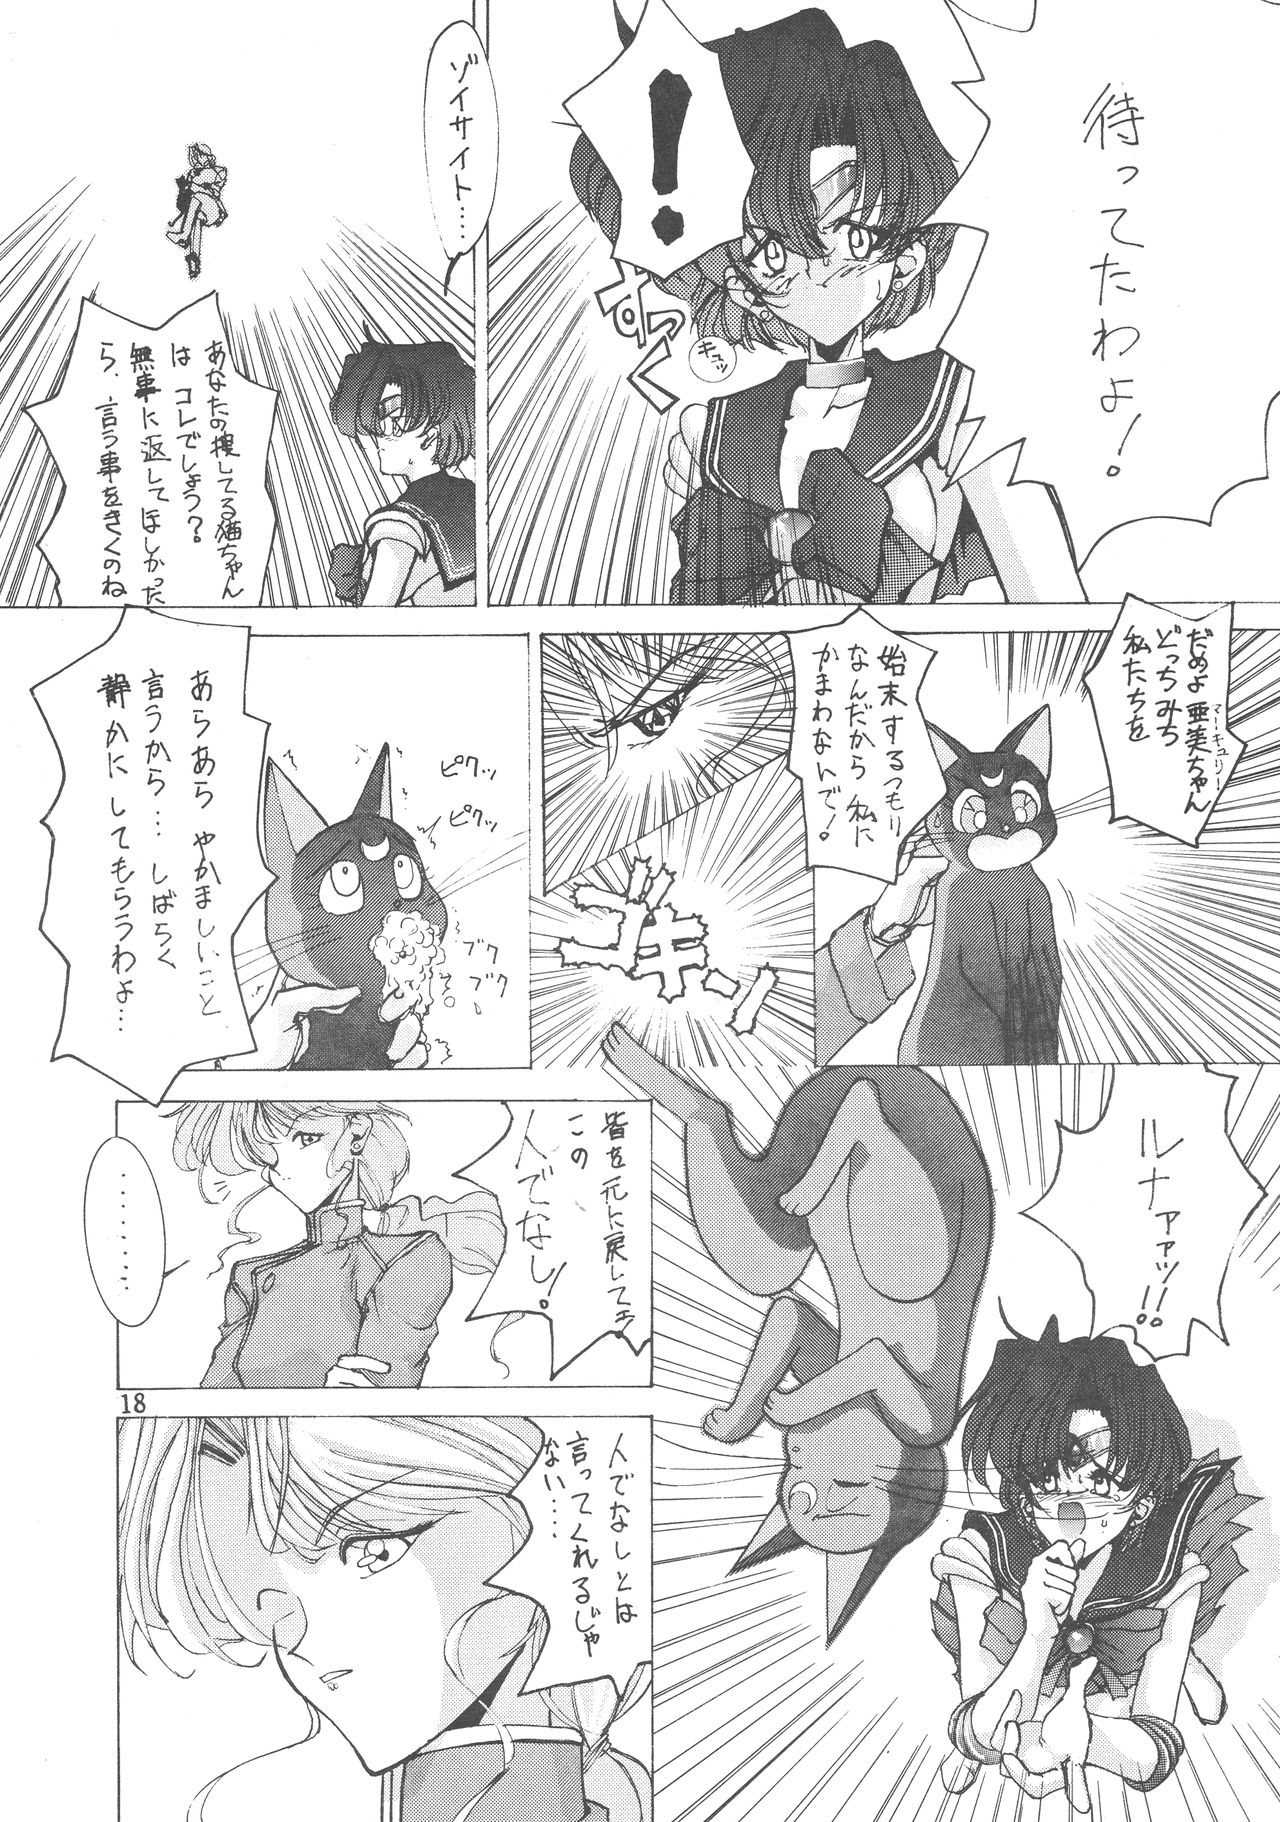 (CR14) [Gyokusaidan (Mimasaka Hideaki)] Ah, Dame da yo Dame Dame Gomen (Sailor moon, Sonic Soldier Borgman (Cレヴォ14) [玉砕団 (美作英明)] あうー だめだよ だめだめ ごめーん (美少女戦士セーラームーン)